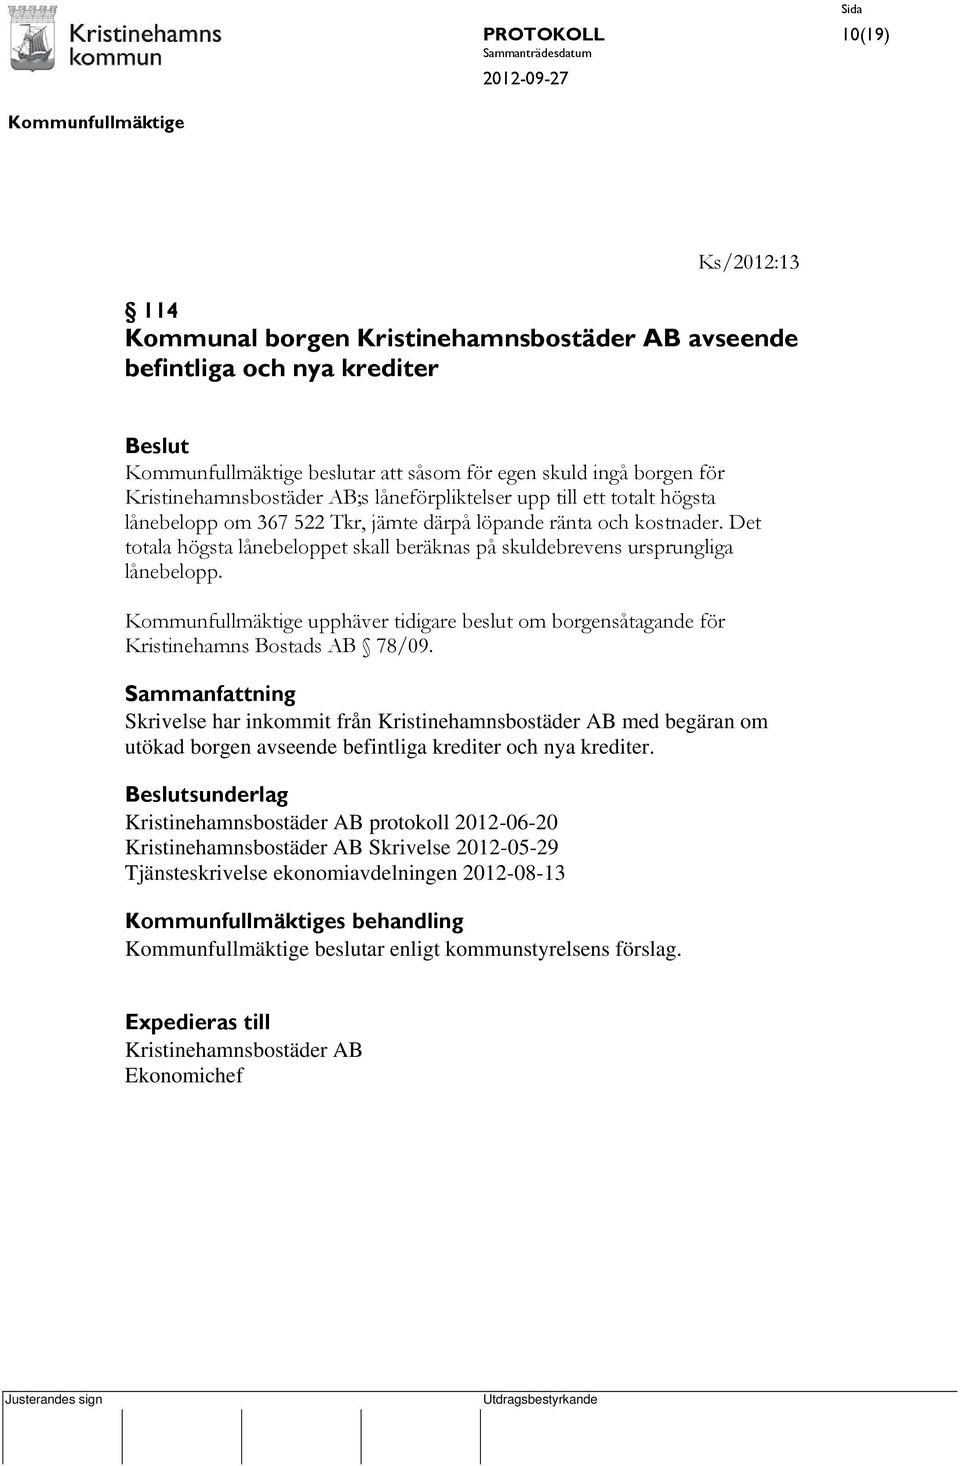 upphäver tidigare beslut om borgensåtagande för Kristinehamns Bostads AB 78/09.